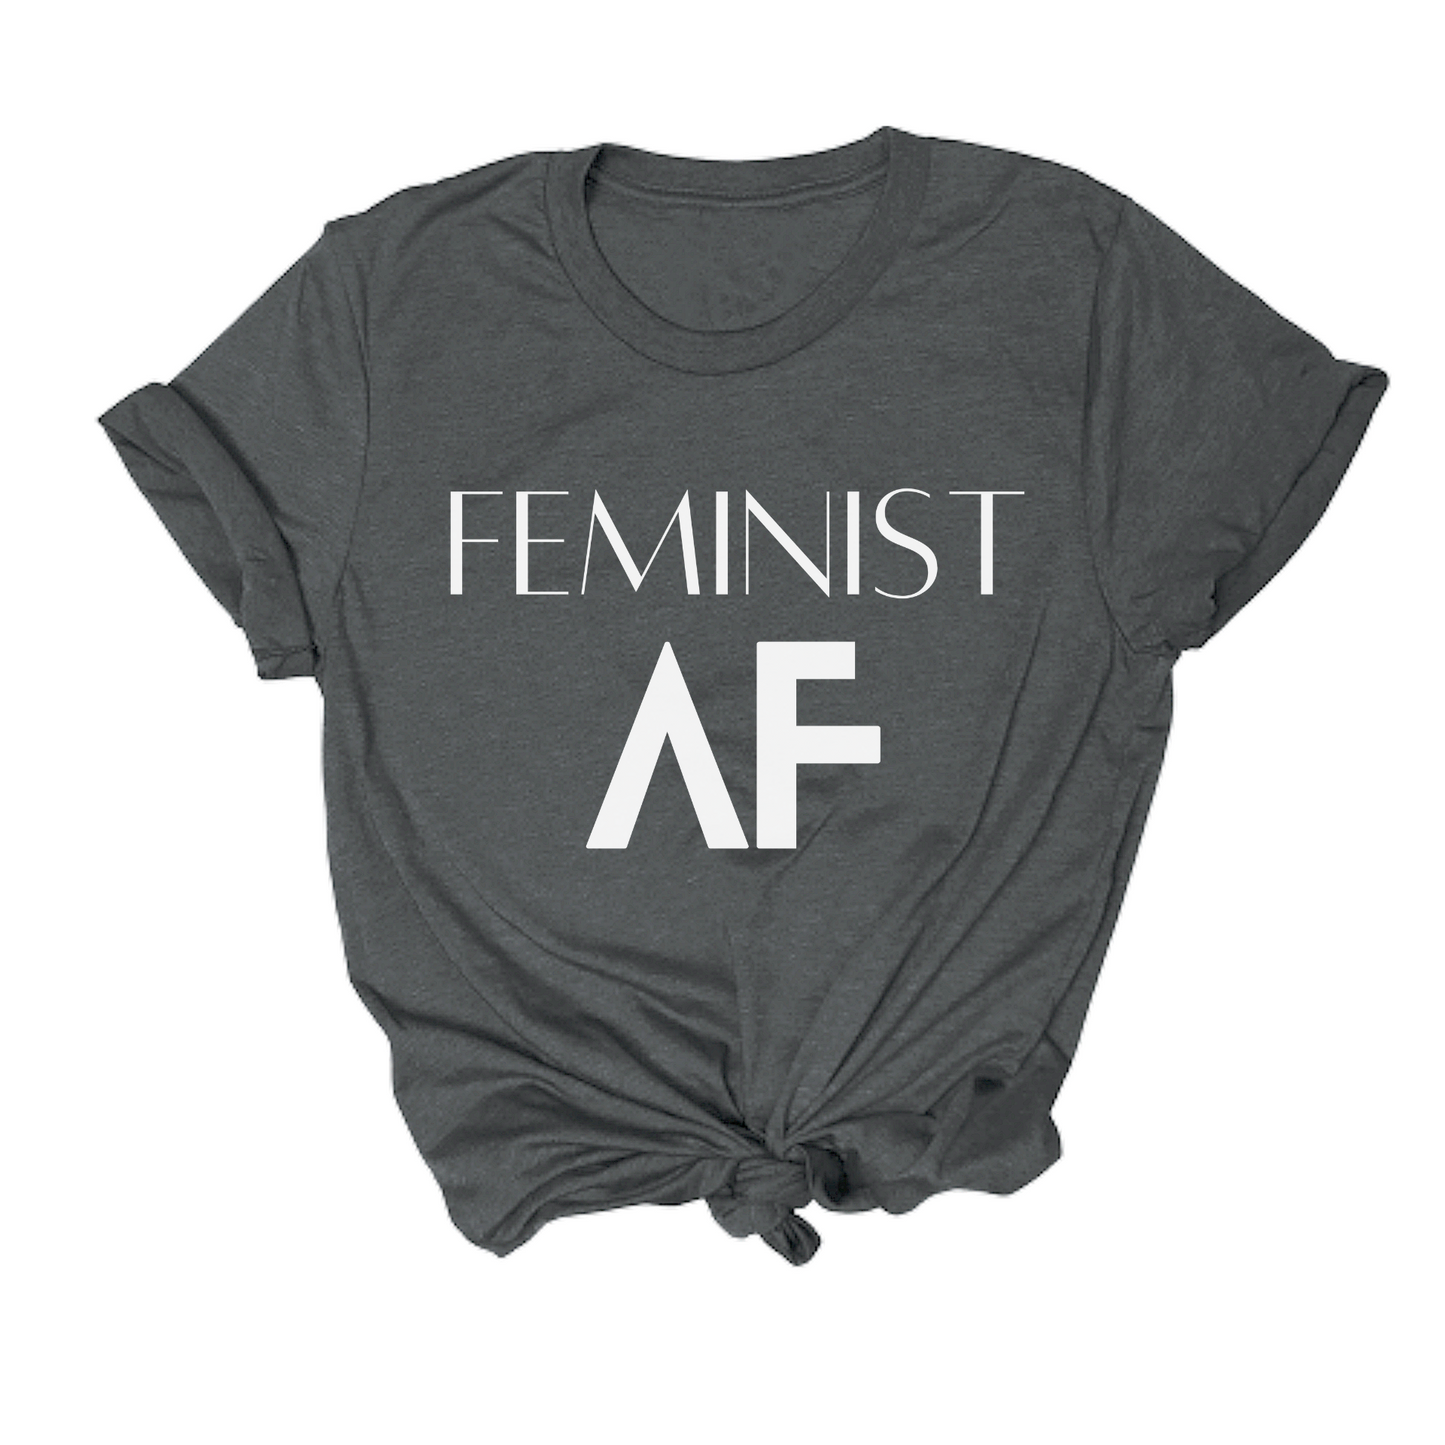 "Feminist AF" Tee